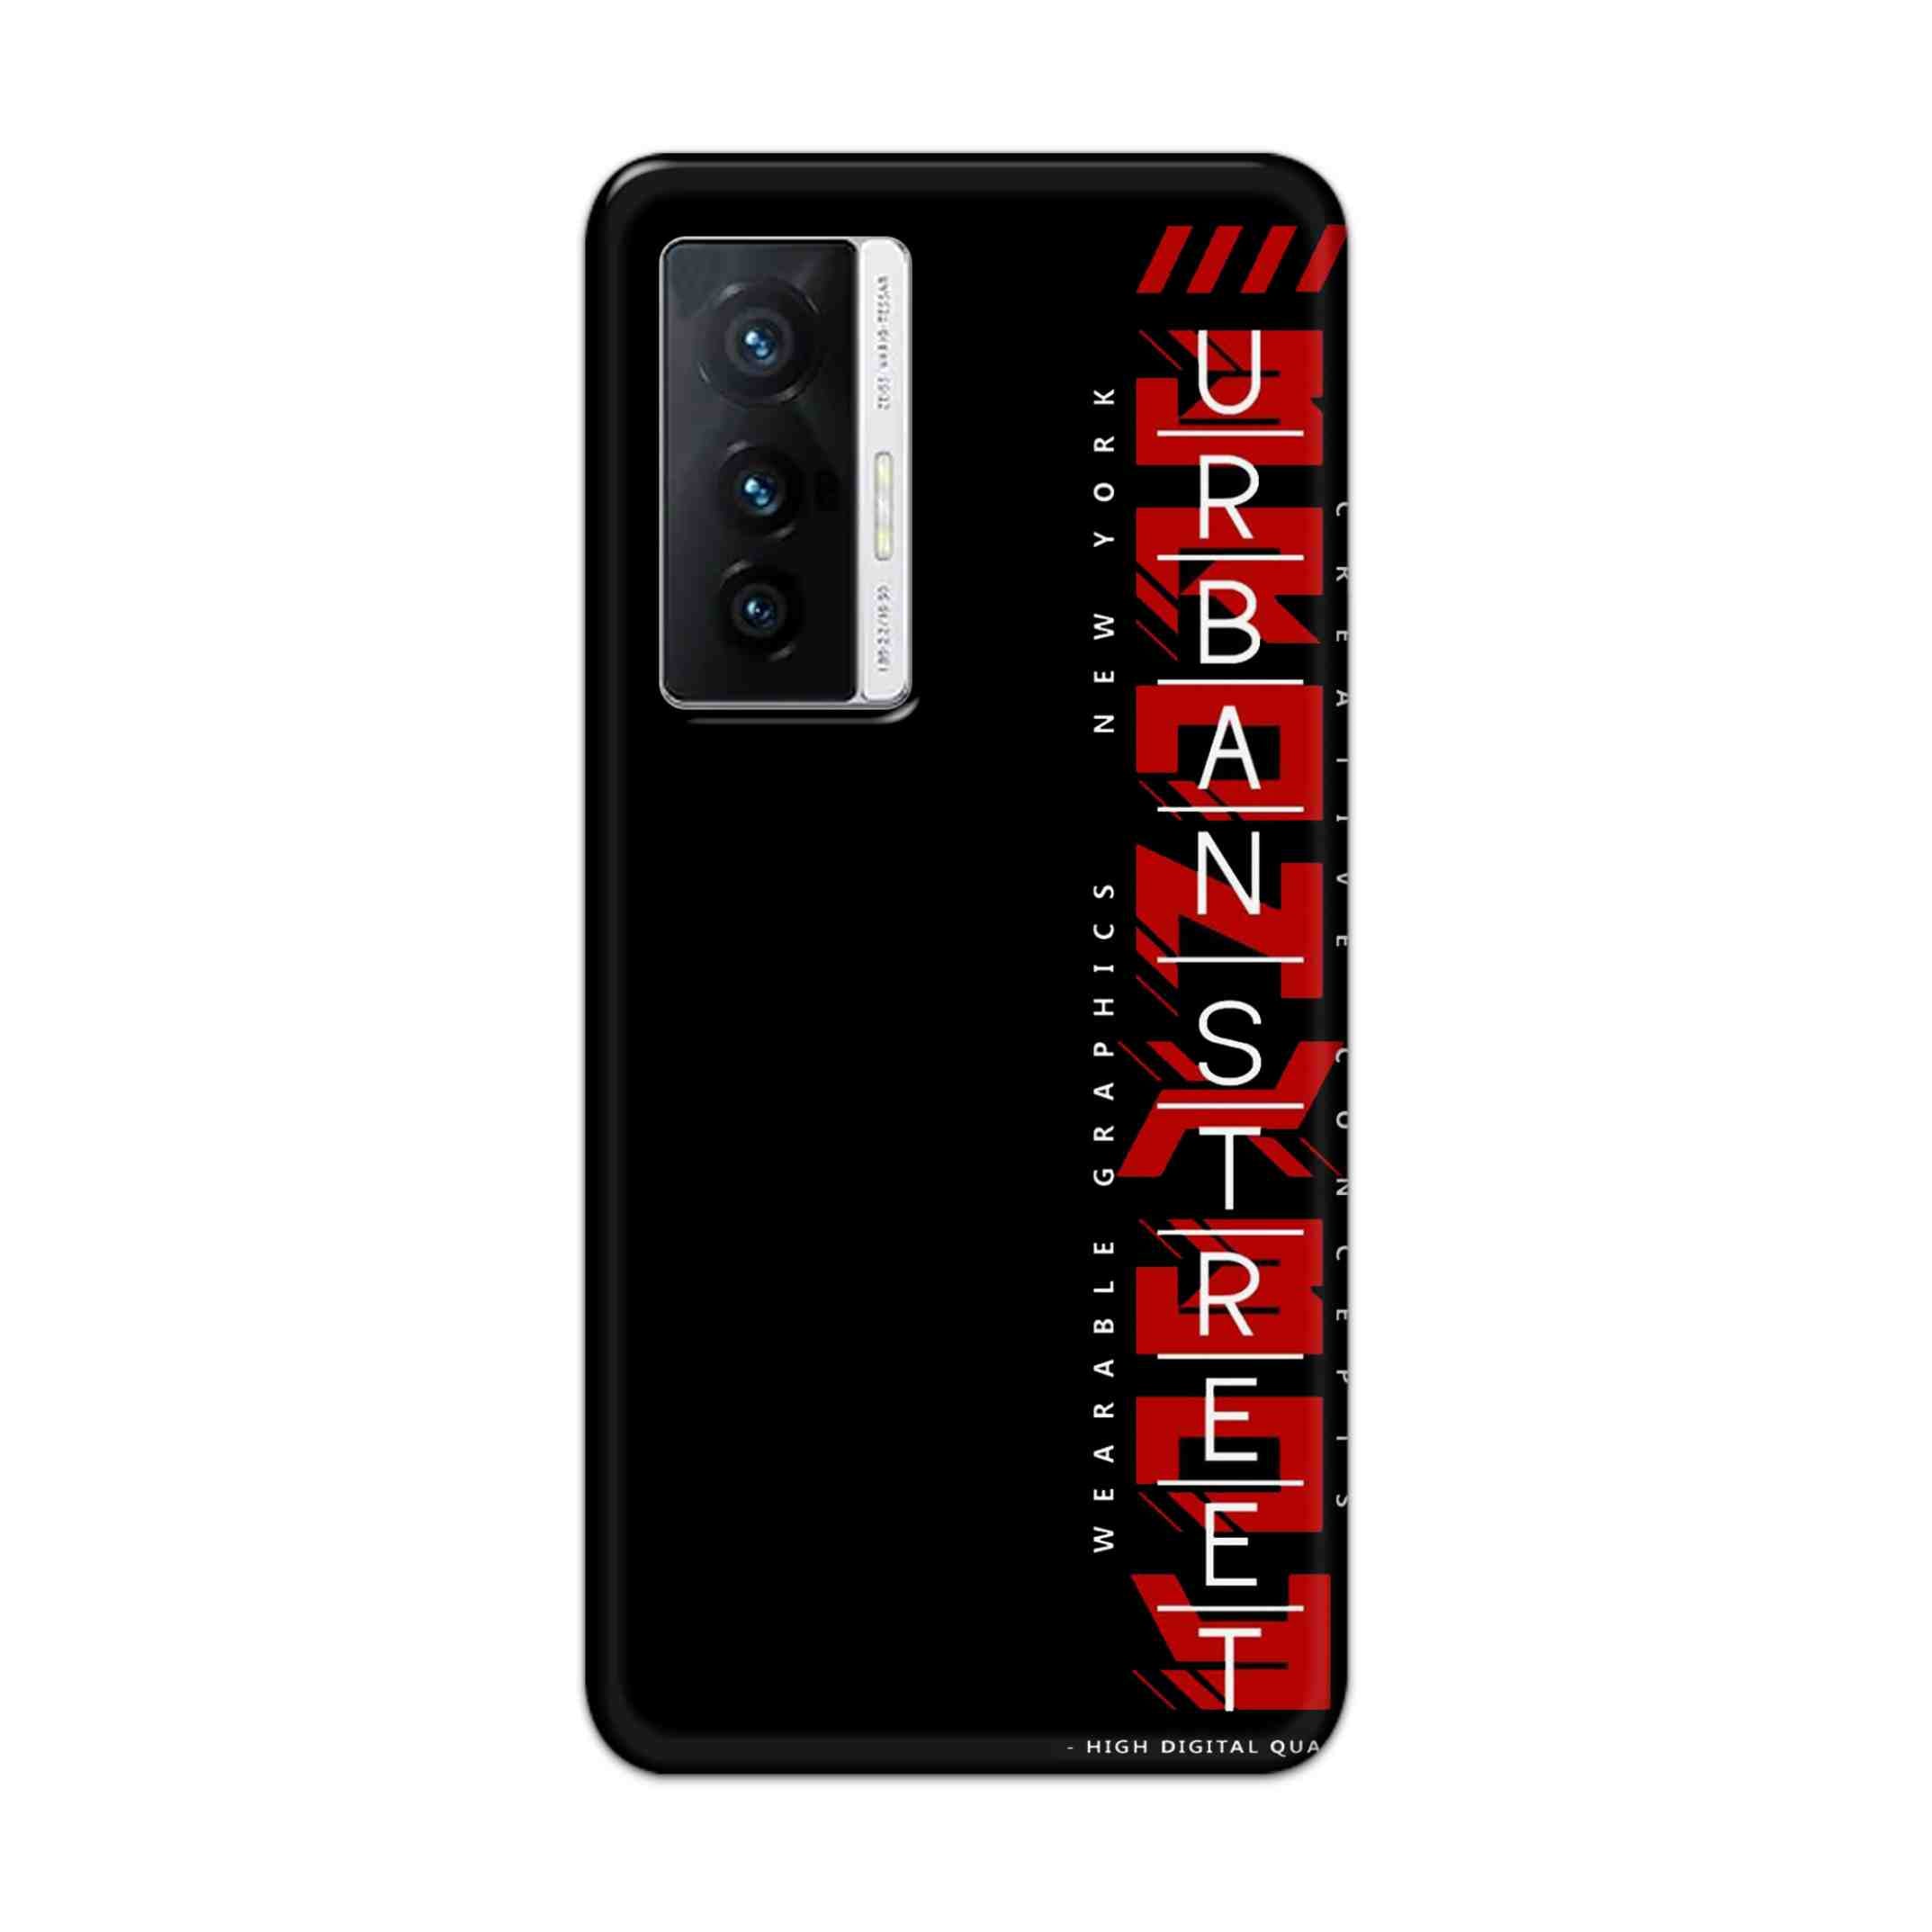 Buy Urban Street Hard Back Mobile Phone Case Cover For Vivo X70 Online